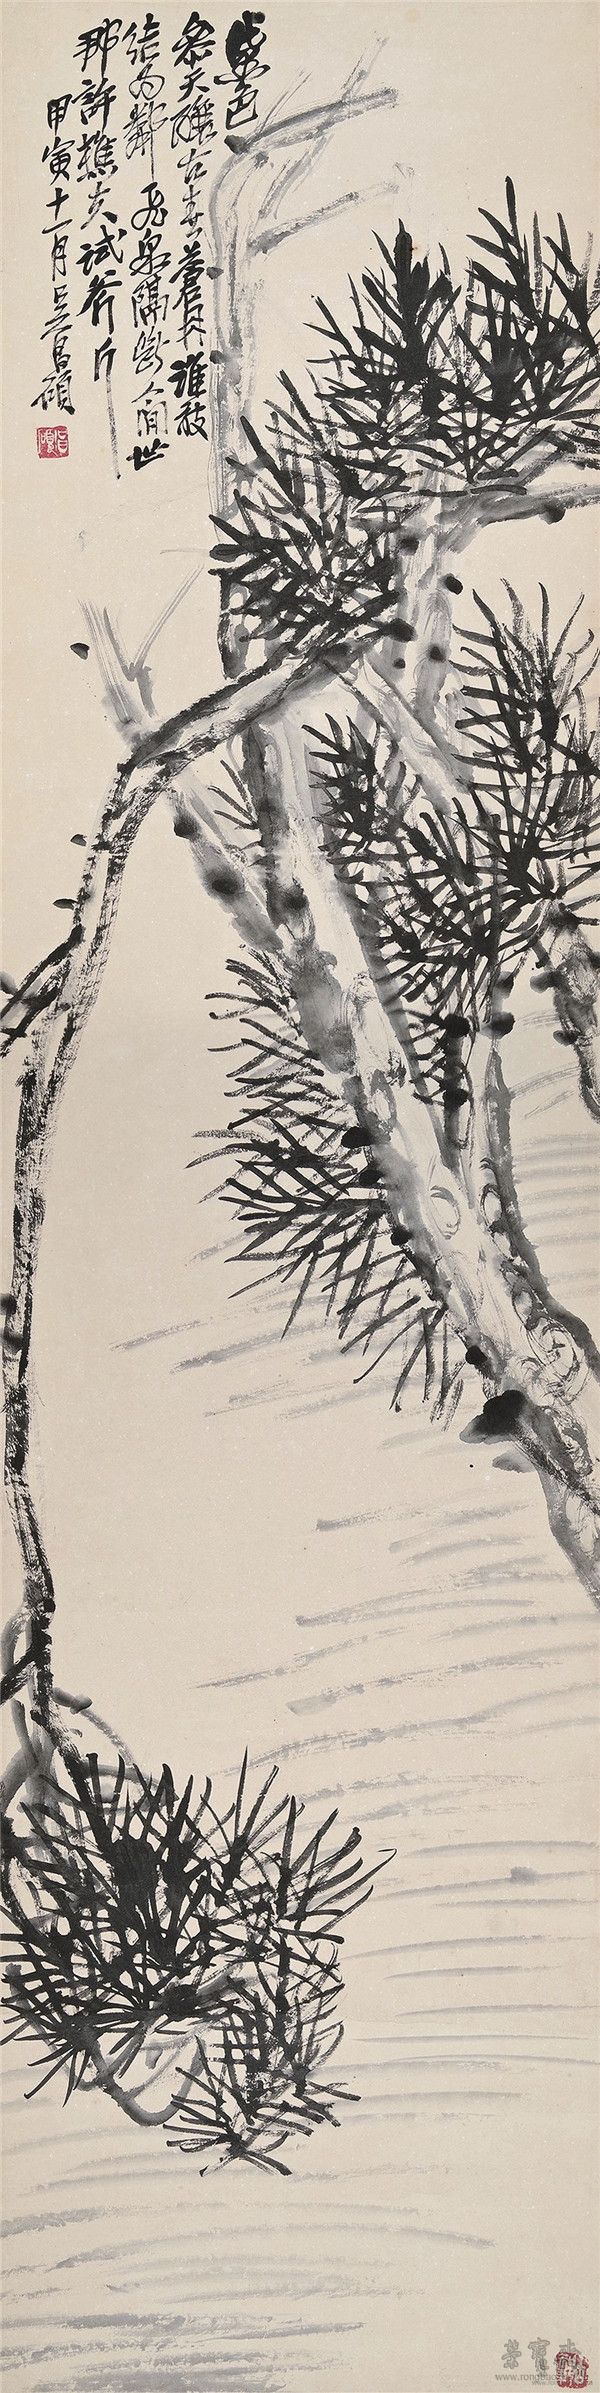 吴昌硕 1844-1927 墨松 水墨纸本 立轴 132×33cm 约3.9平尺